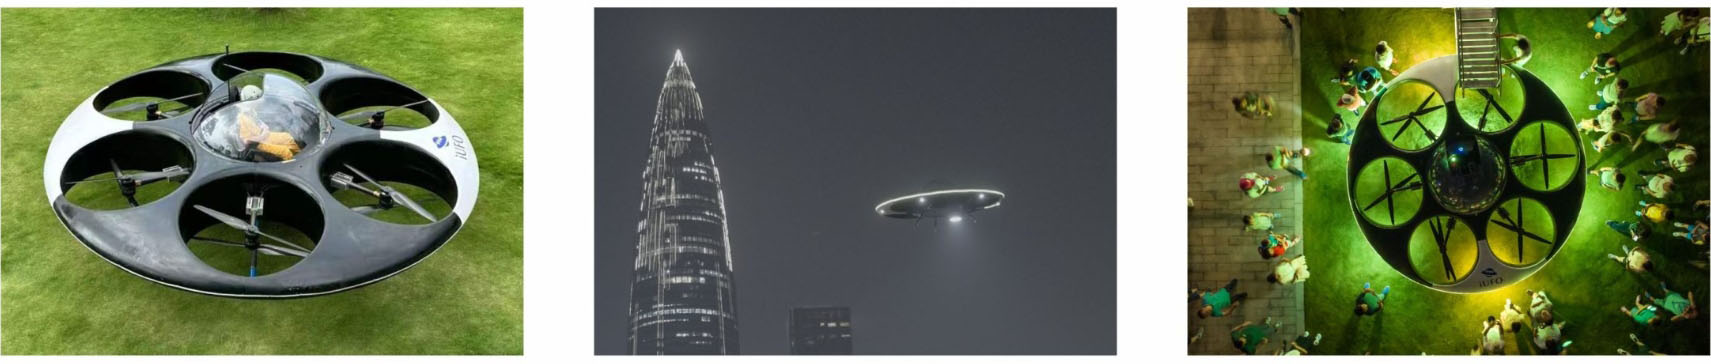 طائرة بدون طيار UFO